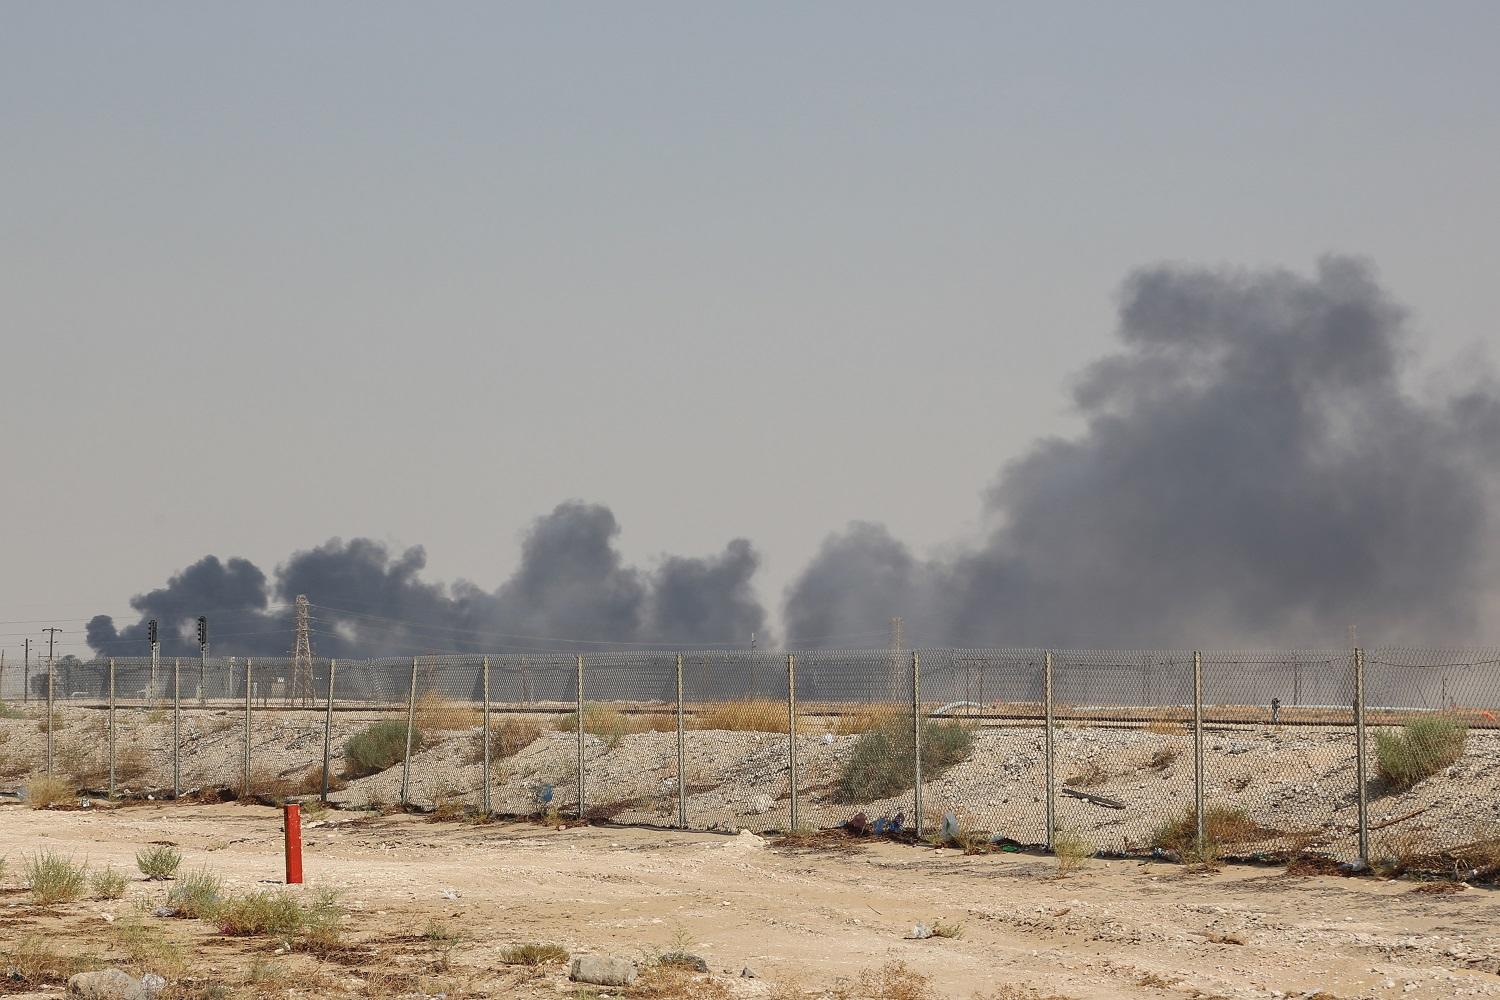 تصاعد دخان من معملي نفط في السعودية تعرضا لهجمات، 16 أيلول/سبتمبر 2019. (أ ف ب)